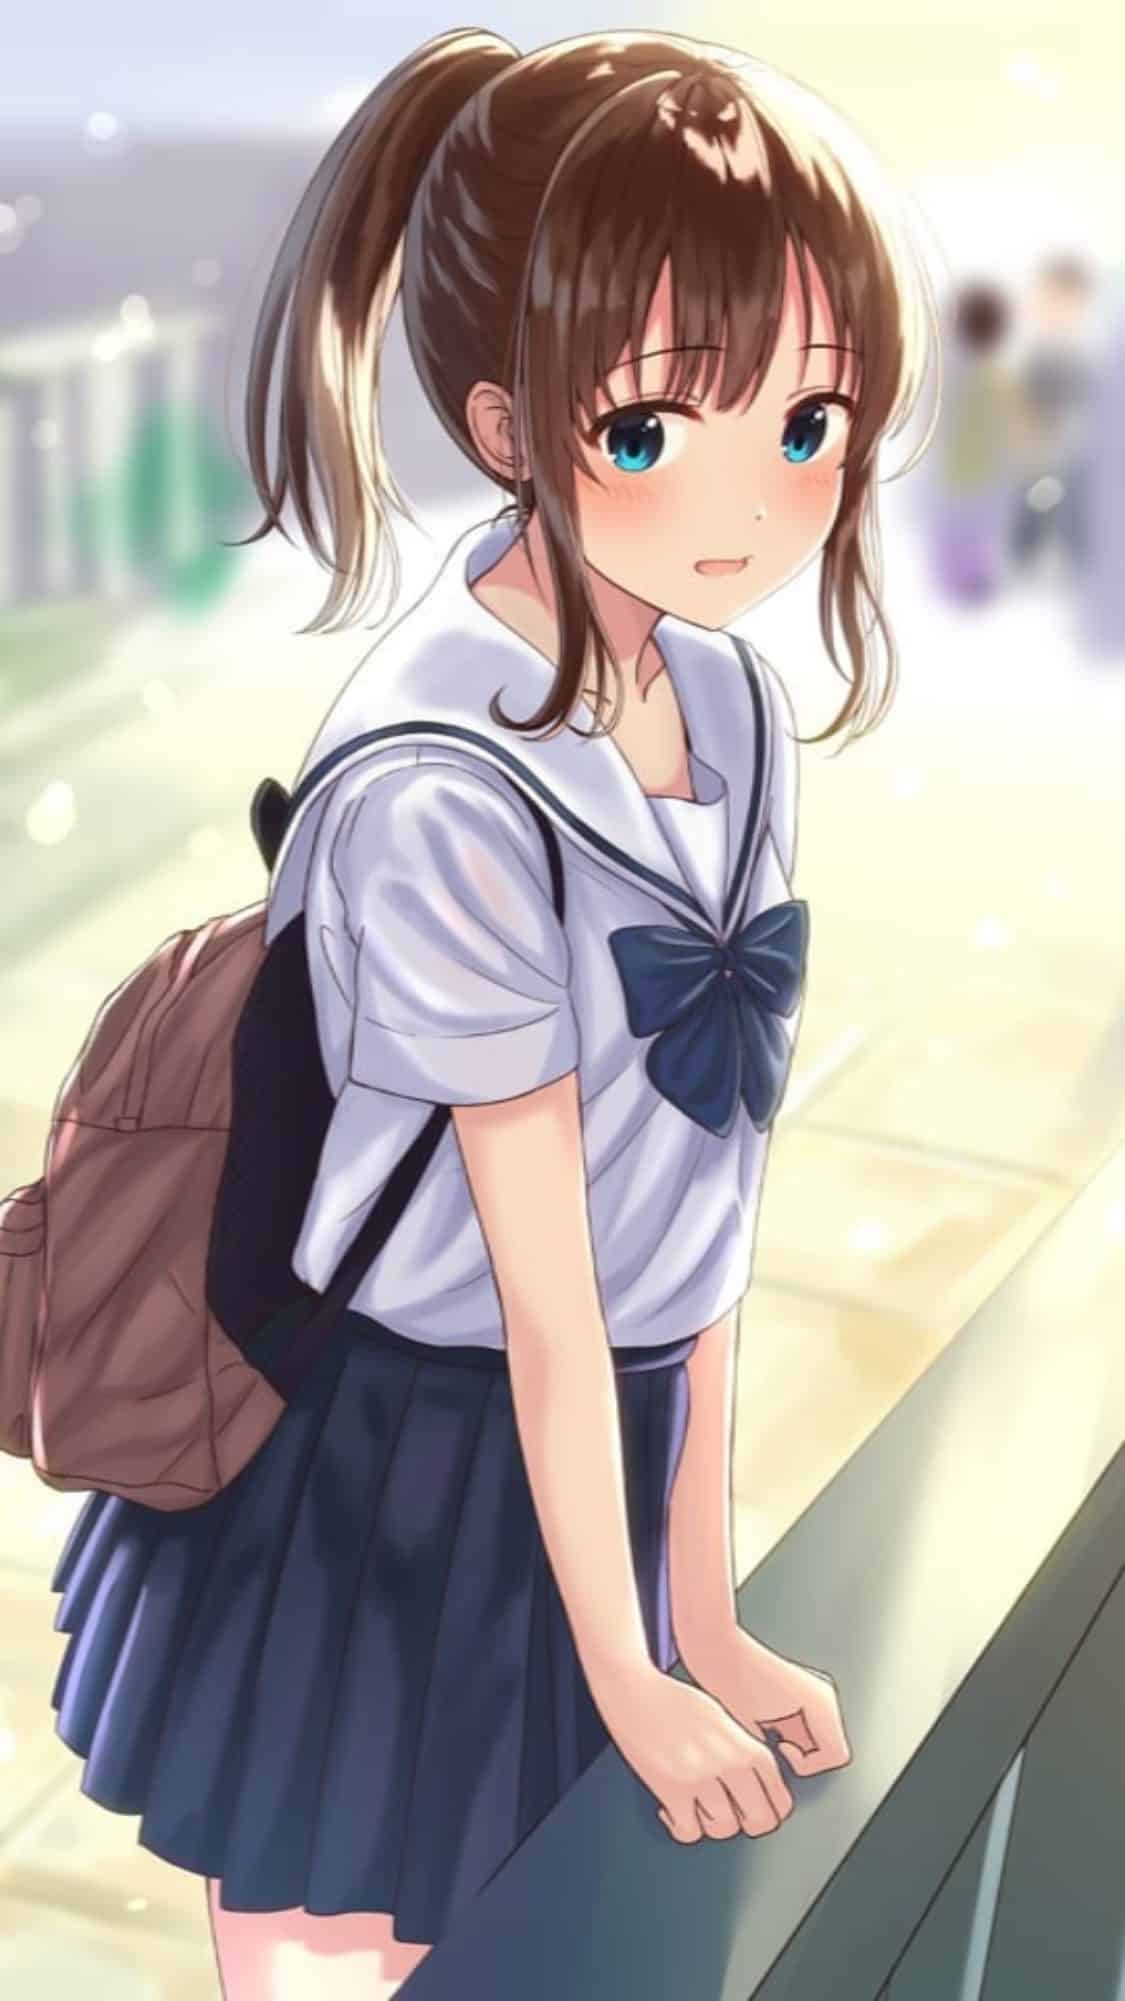 Hình Anime Nữ Học Sinh dễ thương xứng đáng yêu